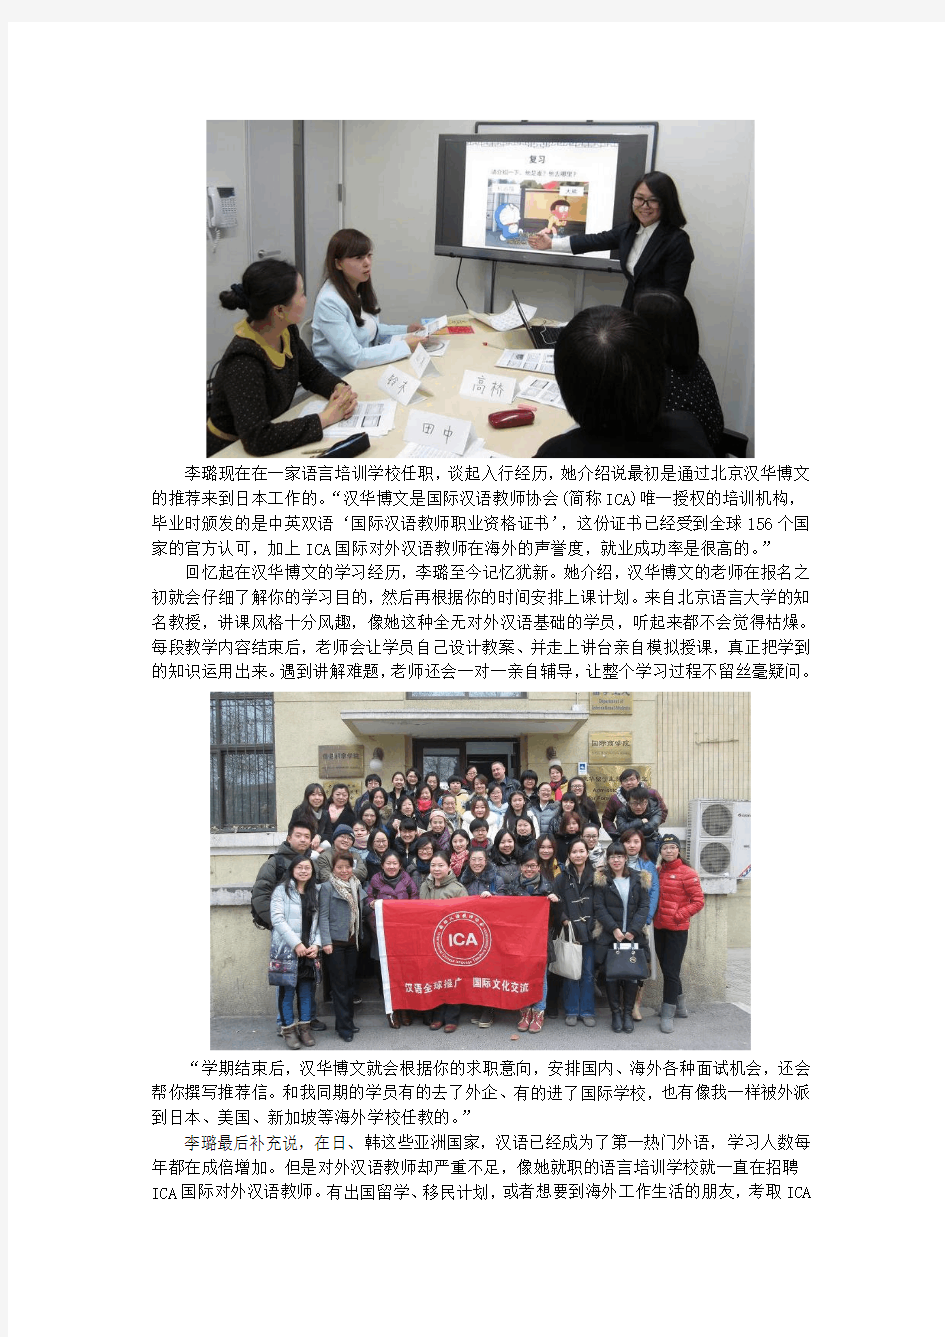 全球通考带动培训热潮 ICA国际对外汉语教师走红日本